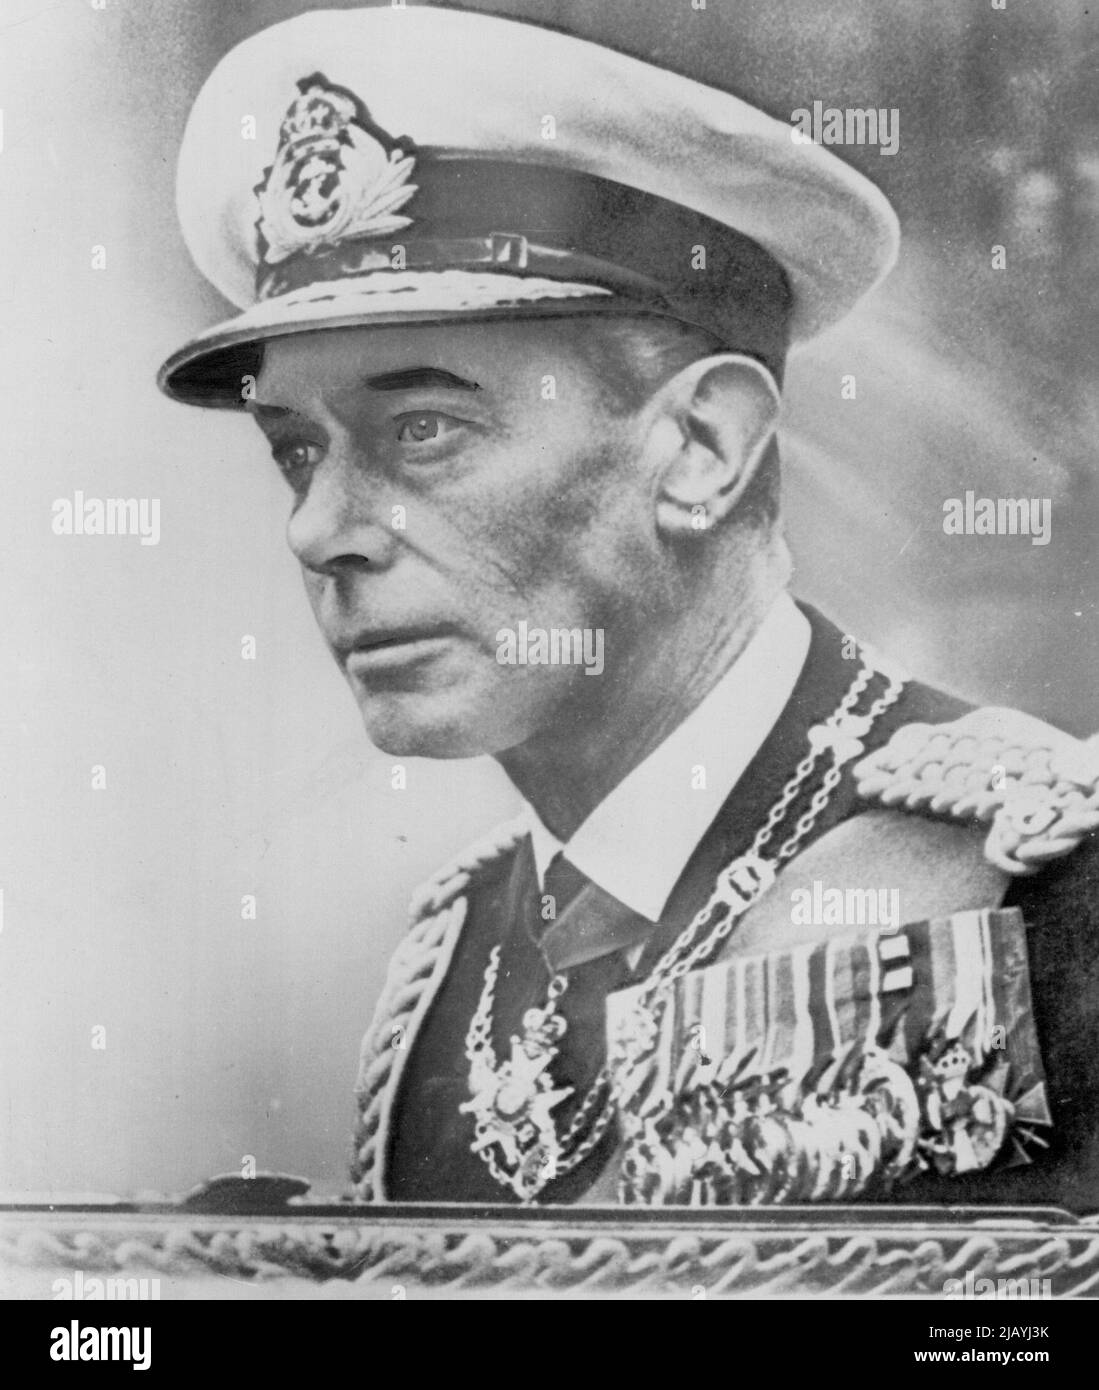 König George VI stirbt -- König George V1 (oben) starb heute friedlich in seinem Schlaf in seinem Landsitz in Sandringhan. Er war 56 Jahre alt. Seine 25-jährige Tochter Elizabeth wurde sofort zur britischen Königin. 06. Februar 1951. (Foto von AP Wirephoto). Stockfoto